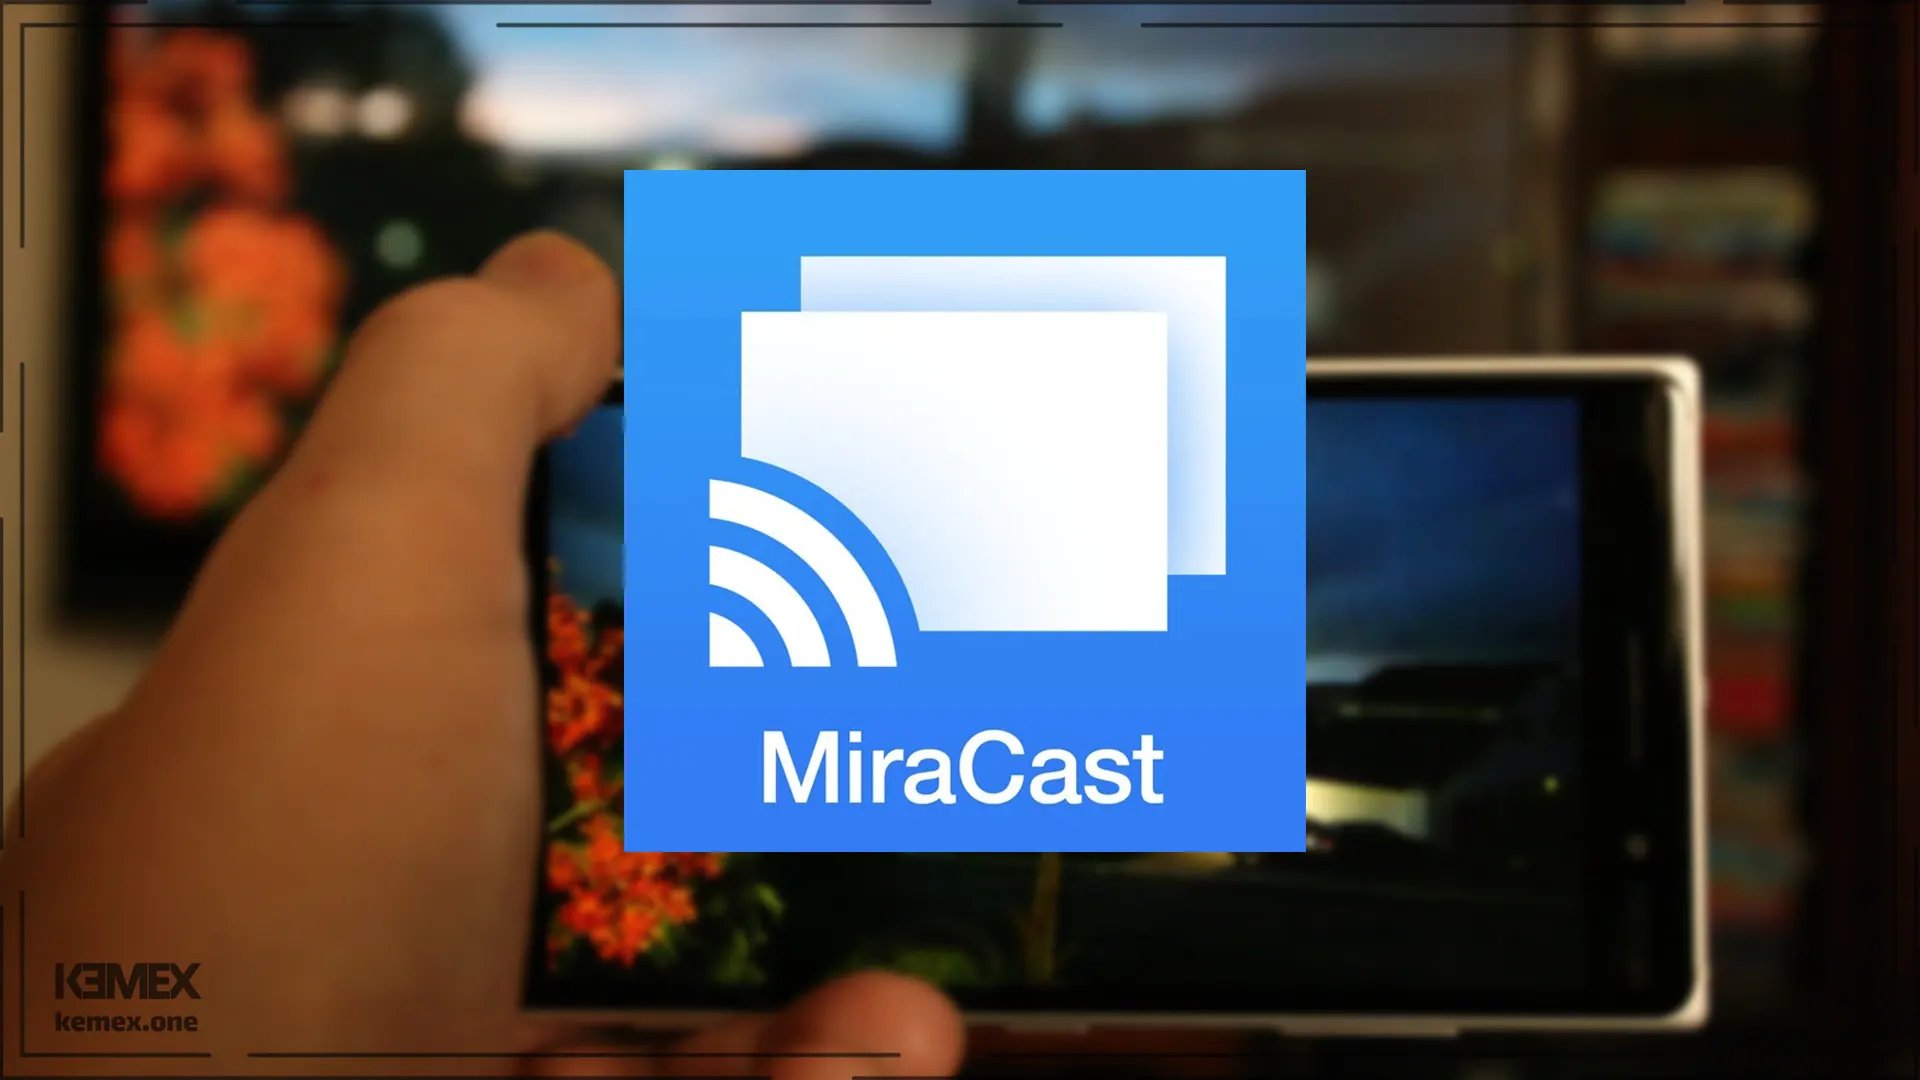 اتصال گوشی و تبلت با میراکست (Miracast)